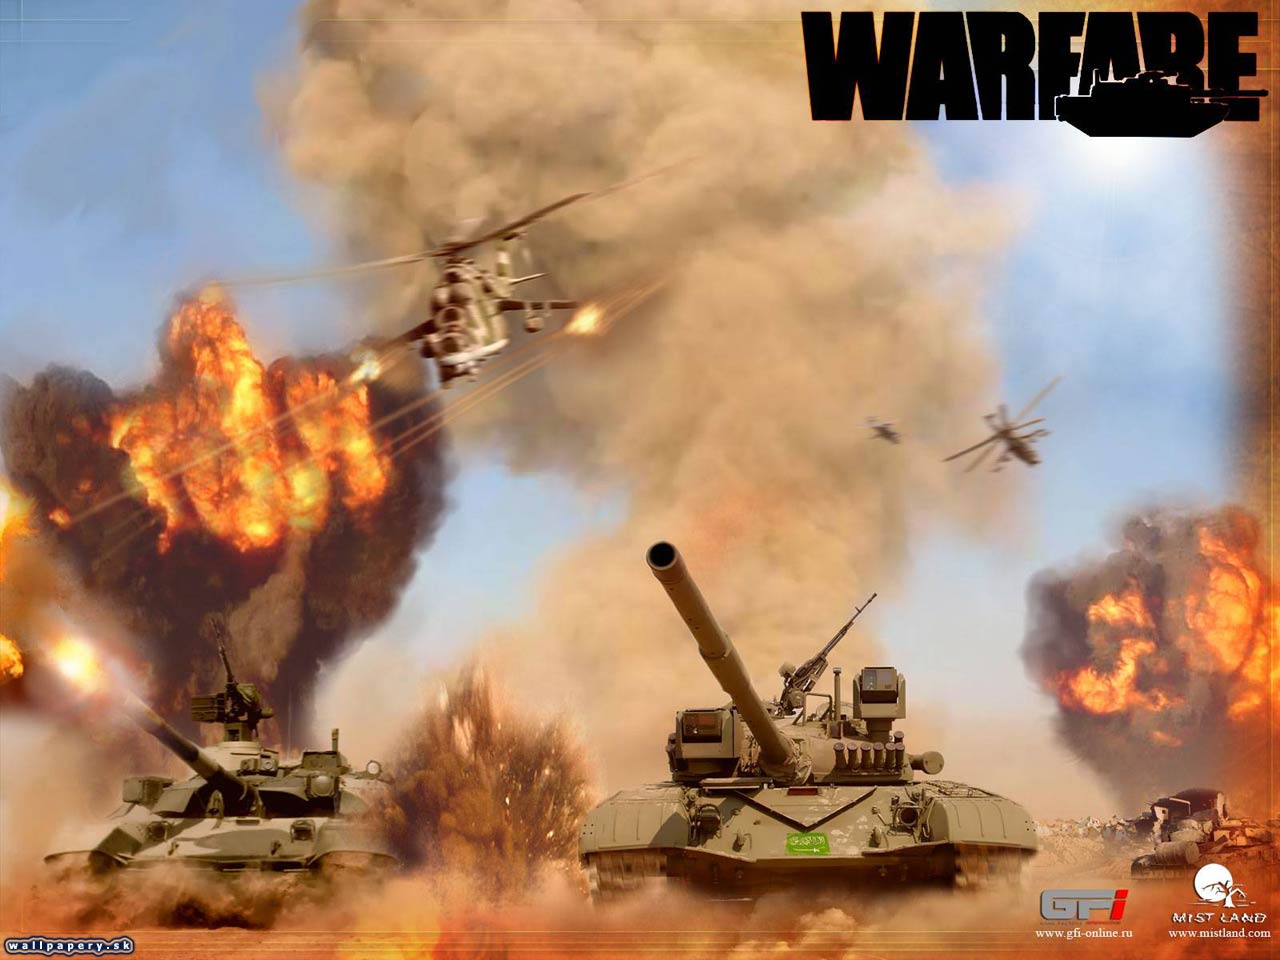 Warfare - wallpaper 1